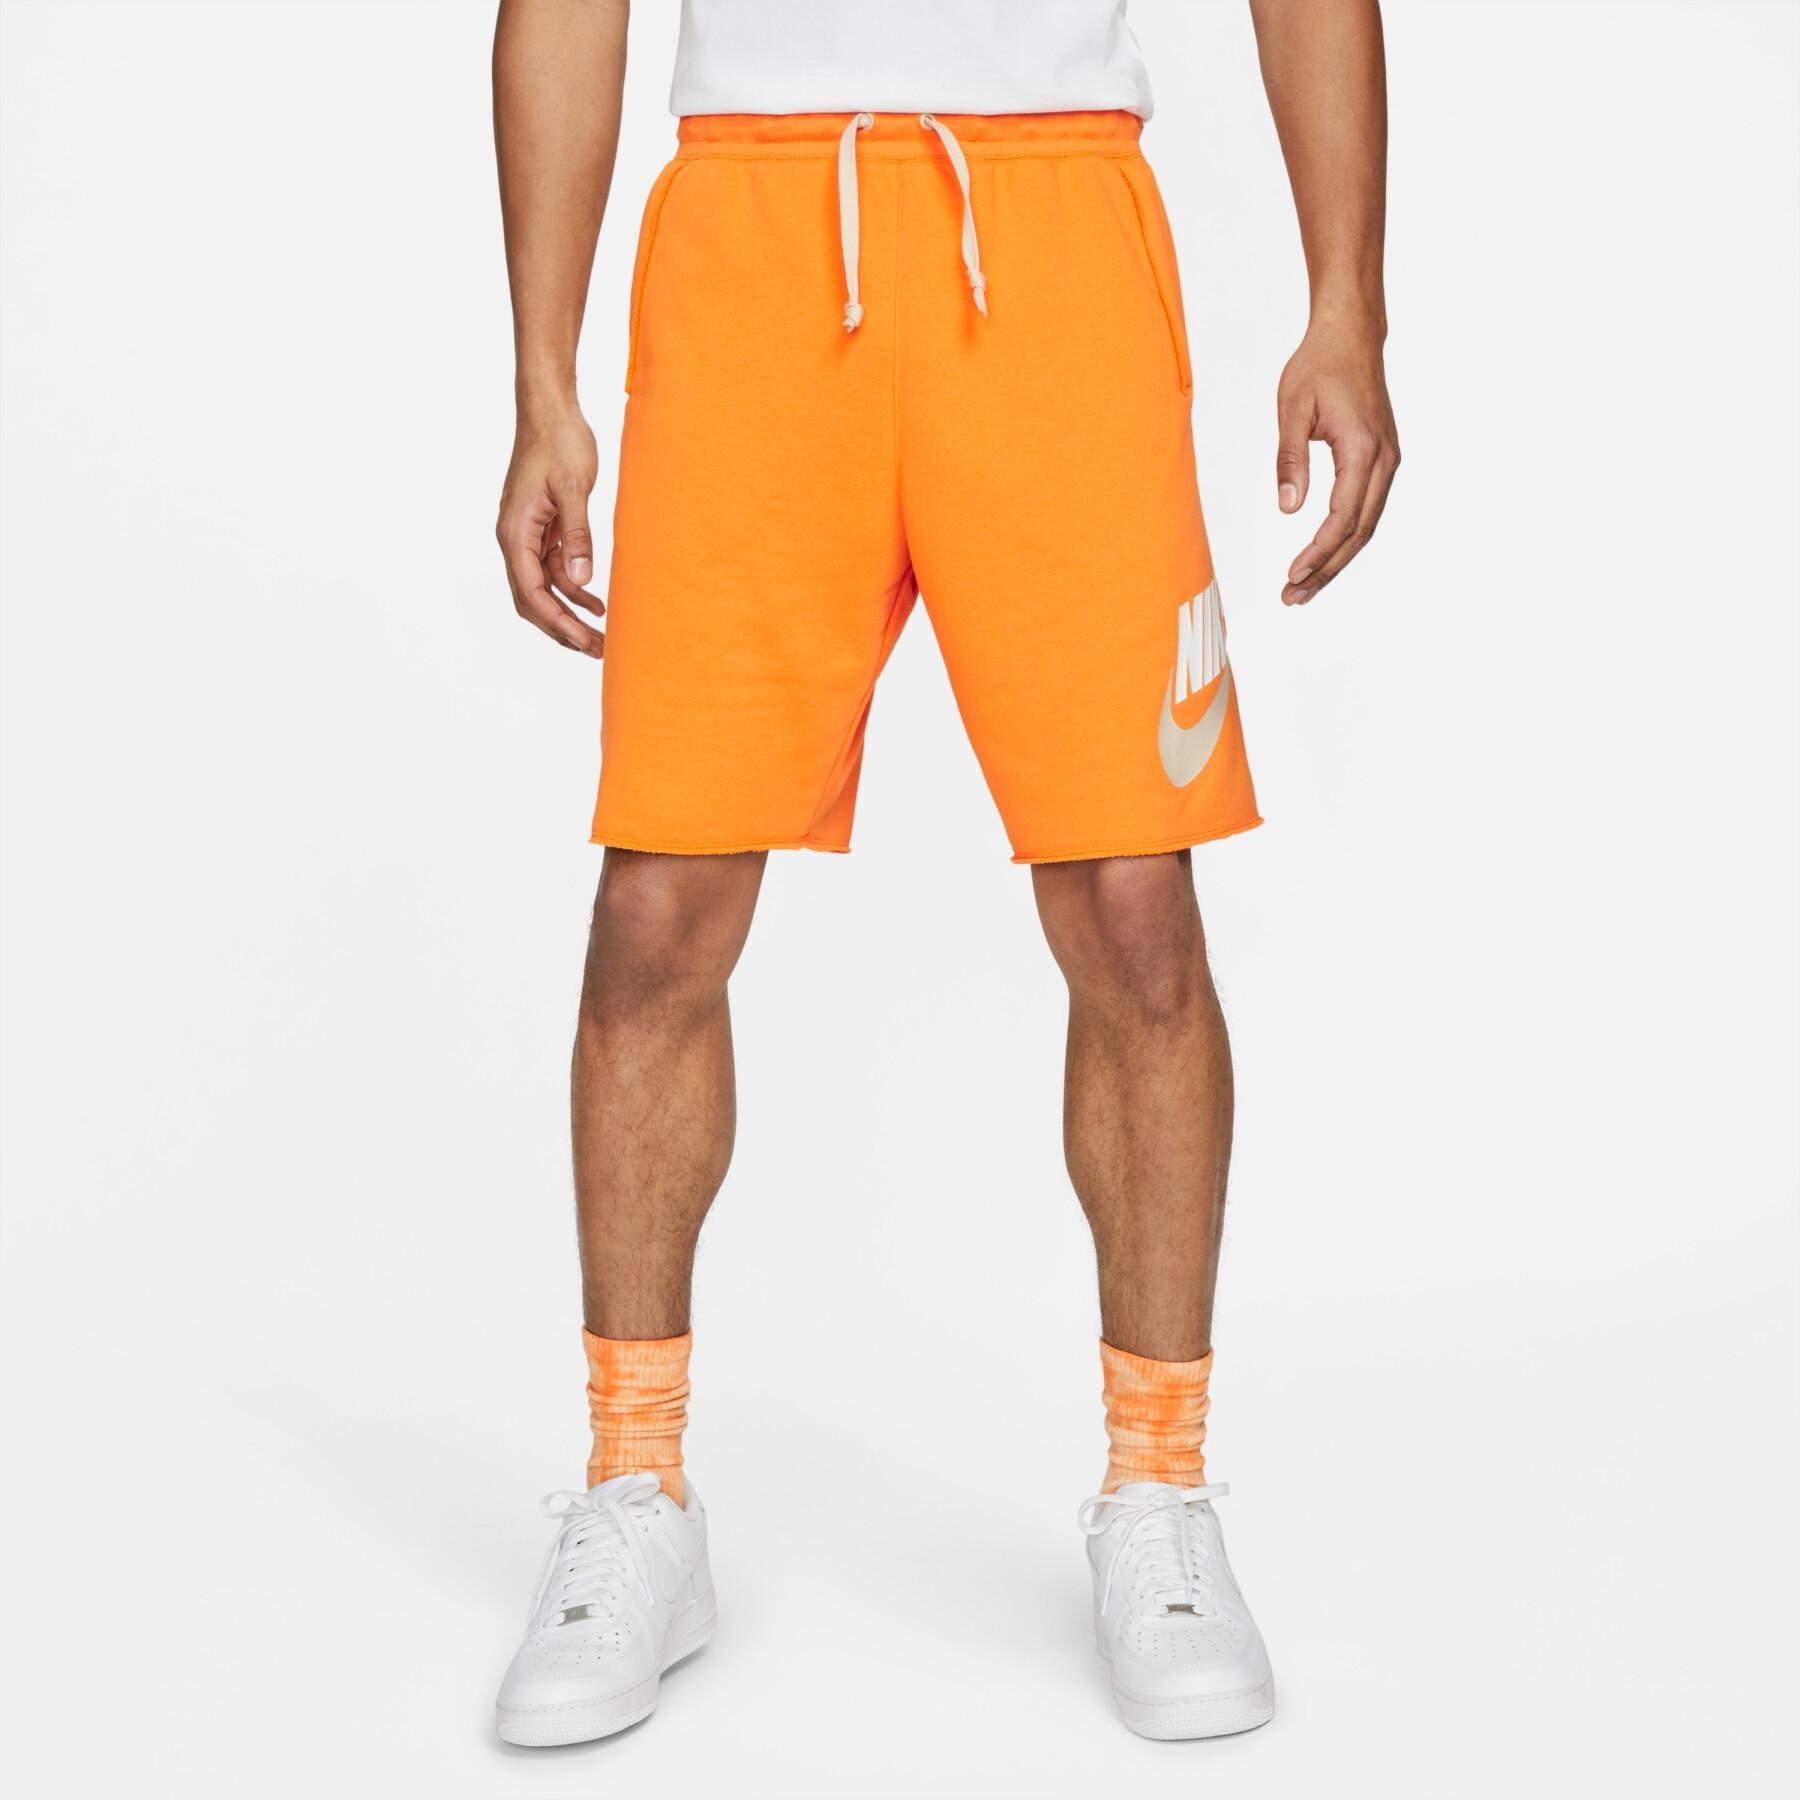 Спортивные шорты мужские Nike Spe Ft Alumni Short DM6817-886 оранжевые S